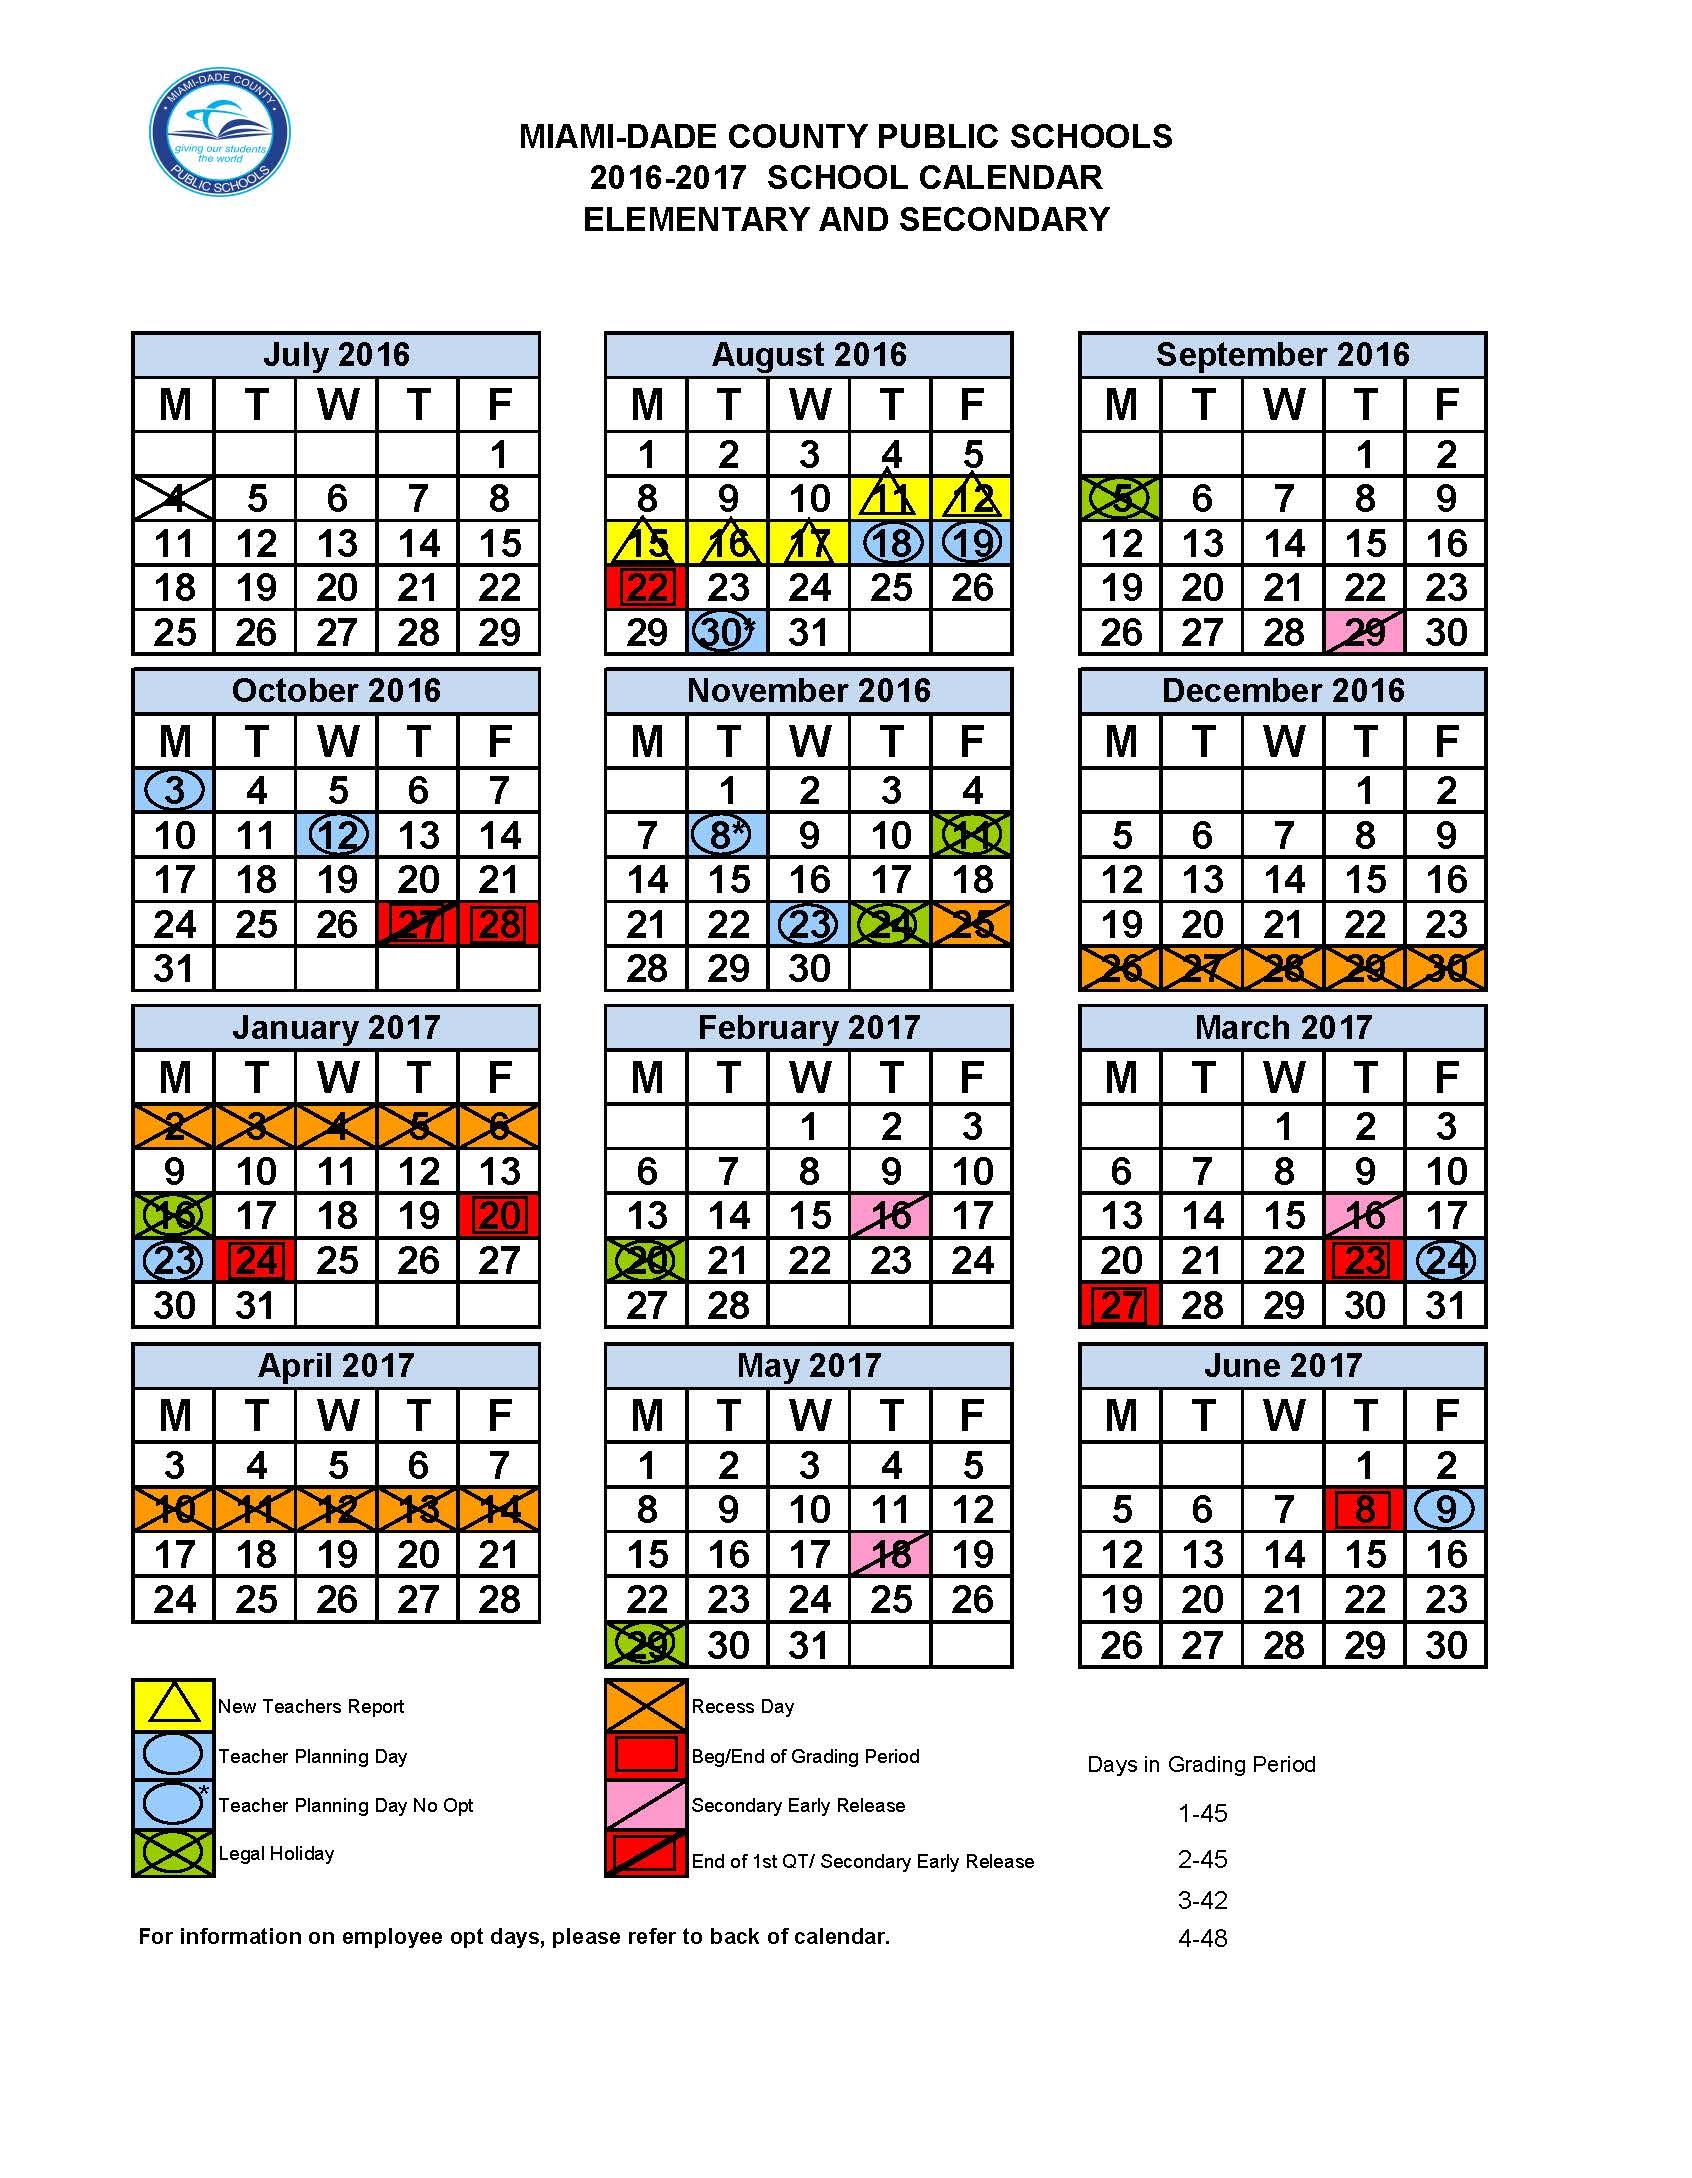 calendario-escolar-2021-a-2022-miami-dade-1-images-and-photos-finder-images-and-photos-finder